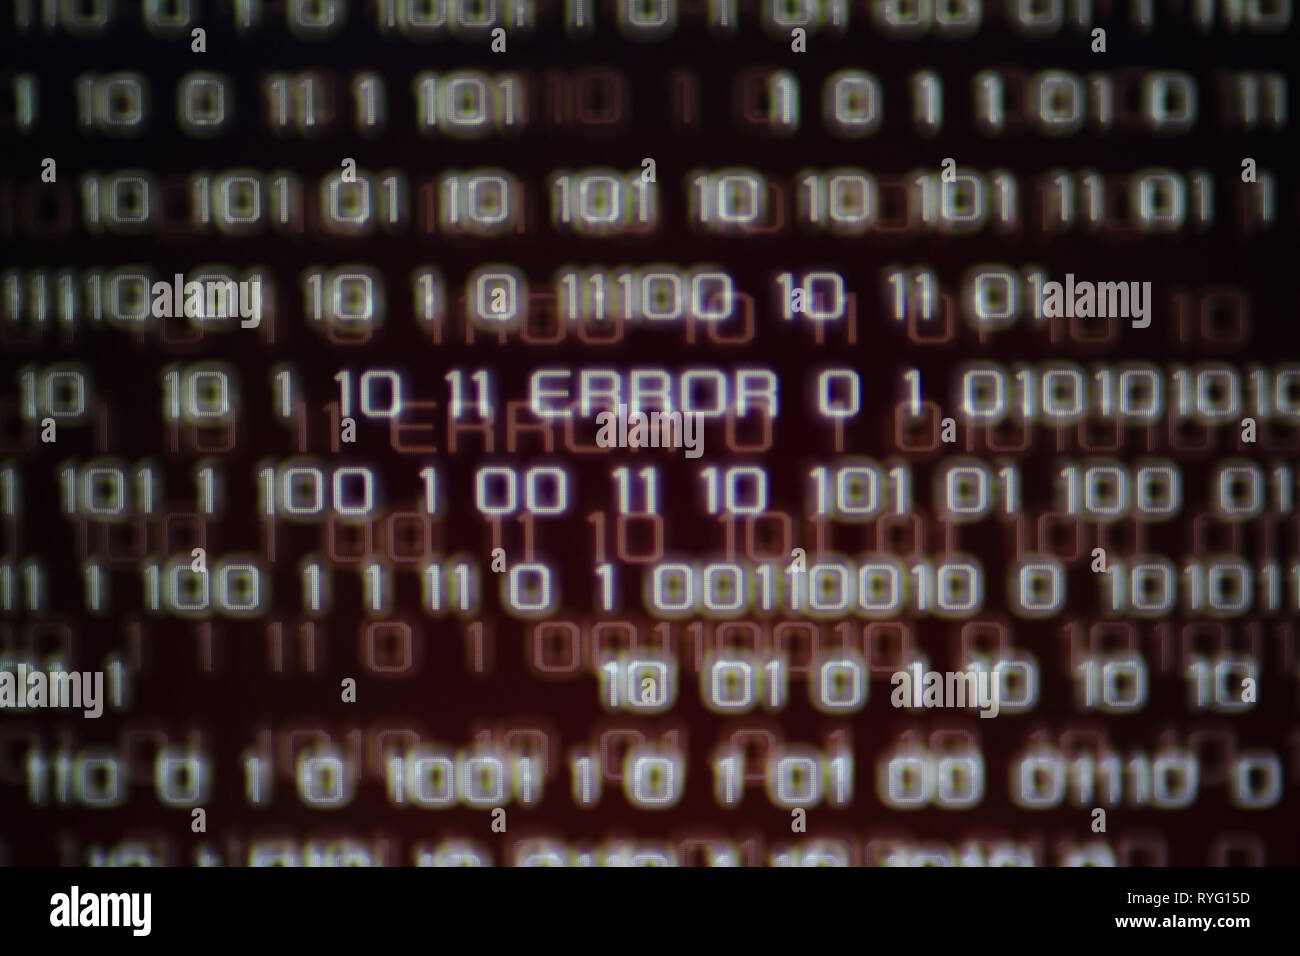 Fehlermeldung im Computer Data Matrix. Rot binäre Hintergrund. Hacker und Computer mit Internetzugang problem Konzepte. Gefahr und Sicherheit Fehler macht der Inte Stockfoto